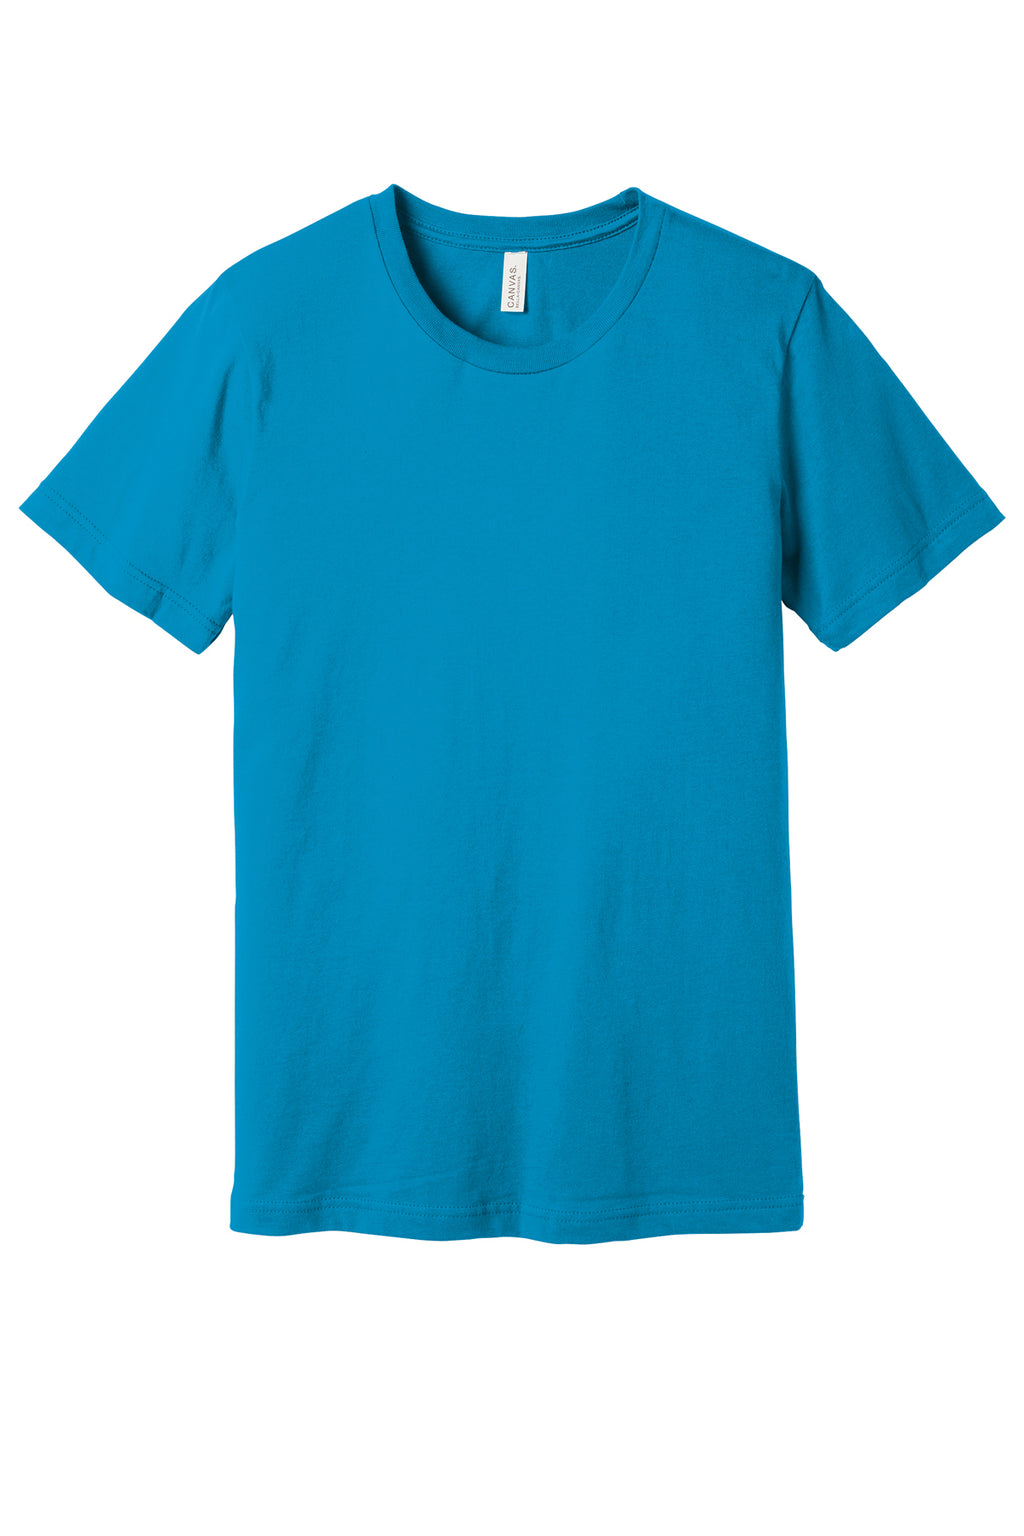 Bella Canvas Mens/Unisex Cotton Short Sleeve Shirts Aqua